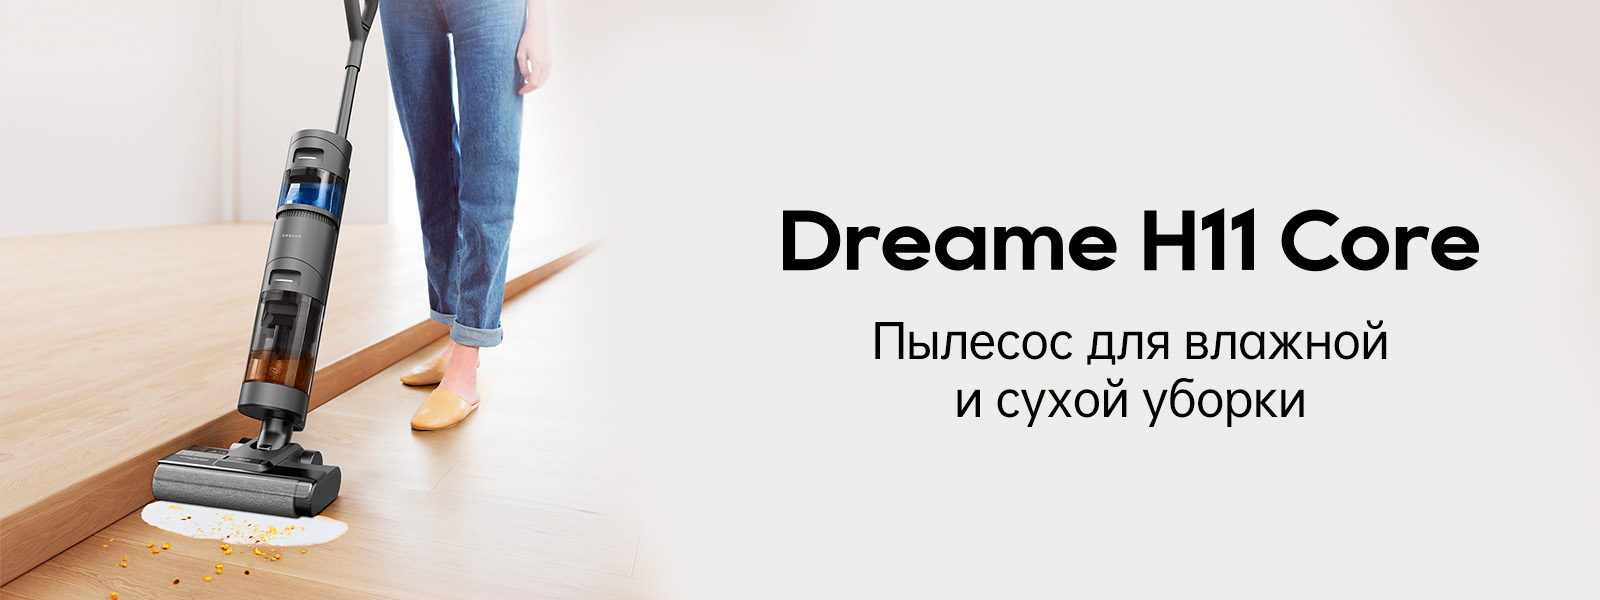 Dreame H11 Core